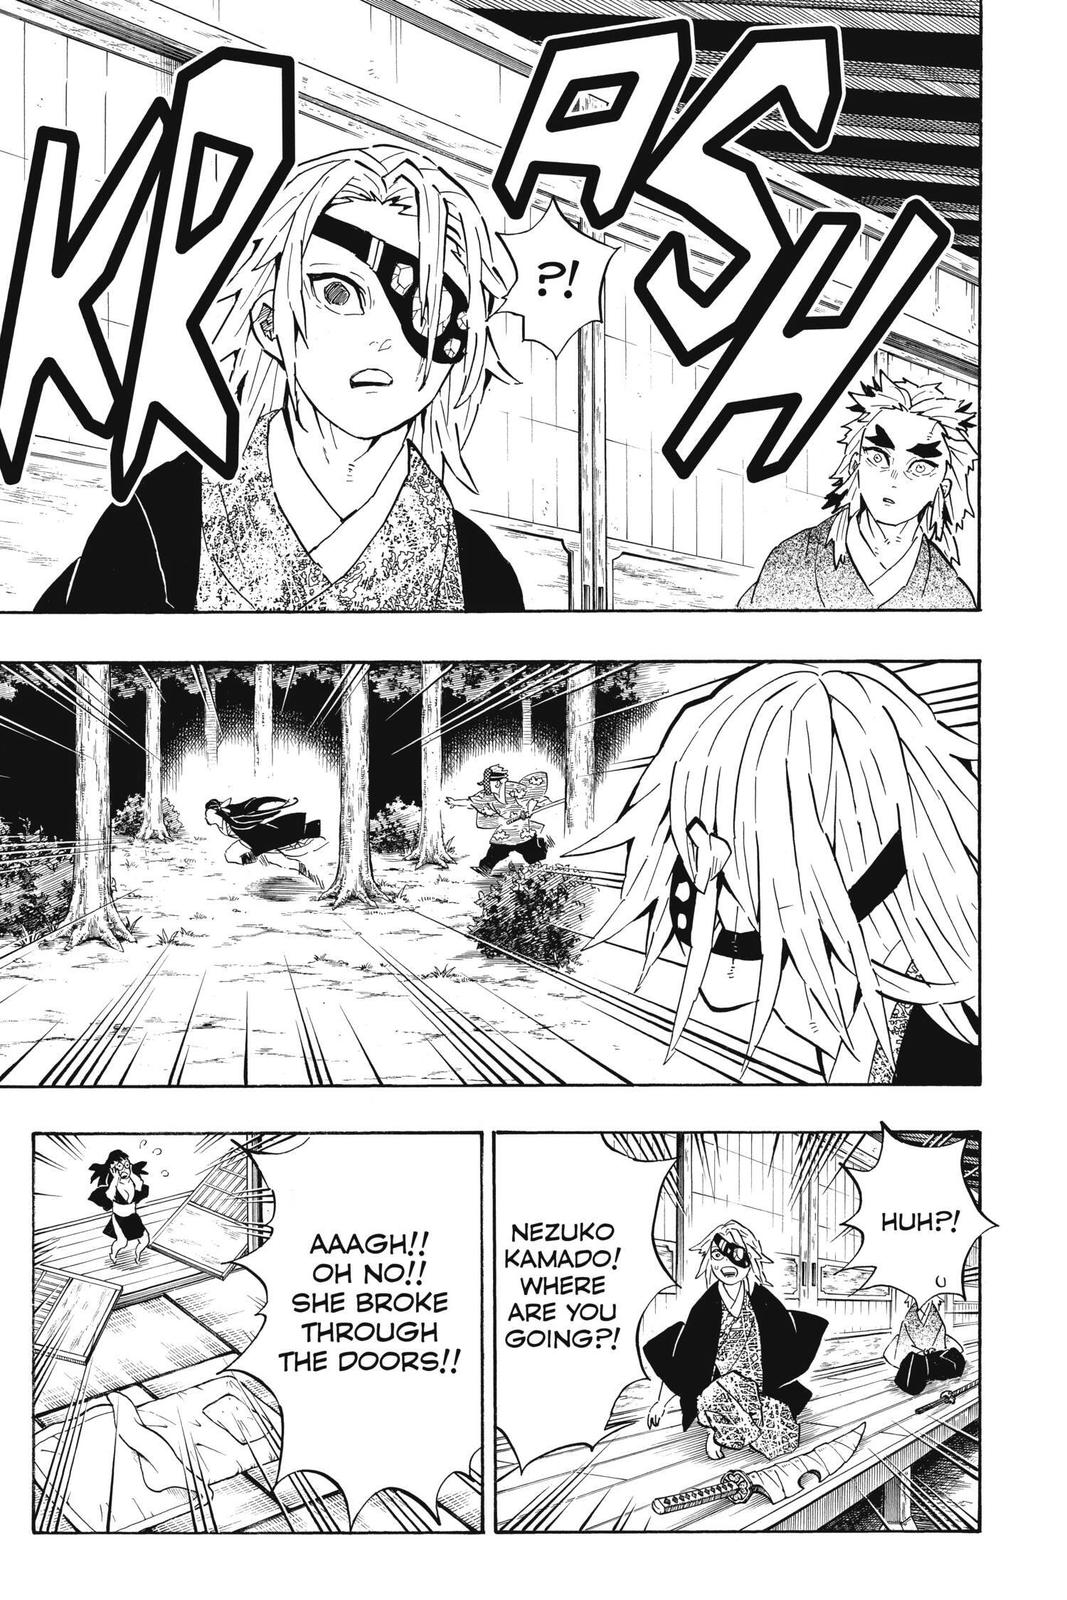 Demon Slayer Manga Manga Chapter - 185 - image 3